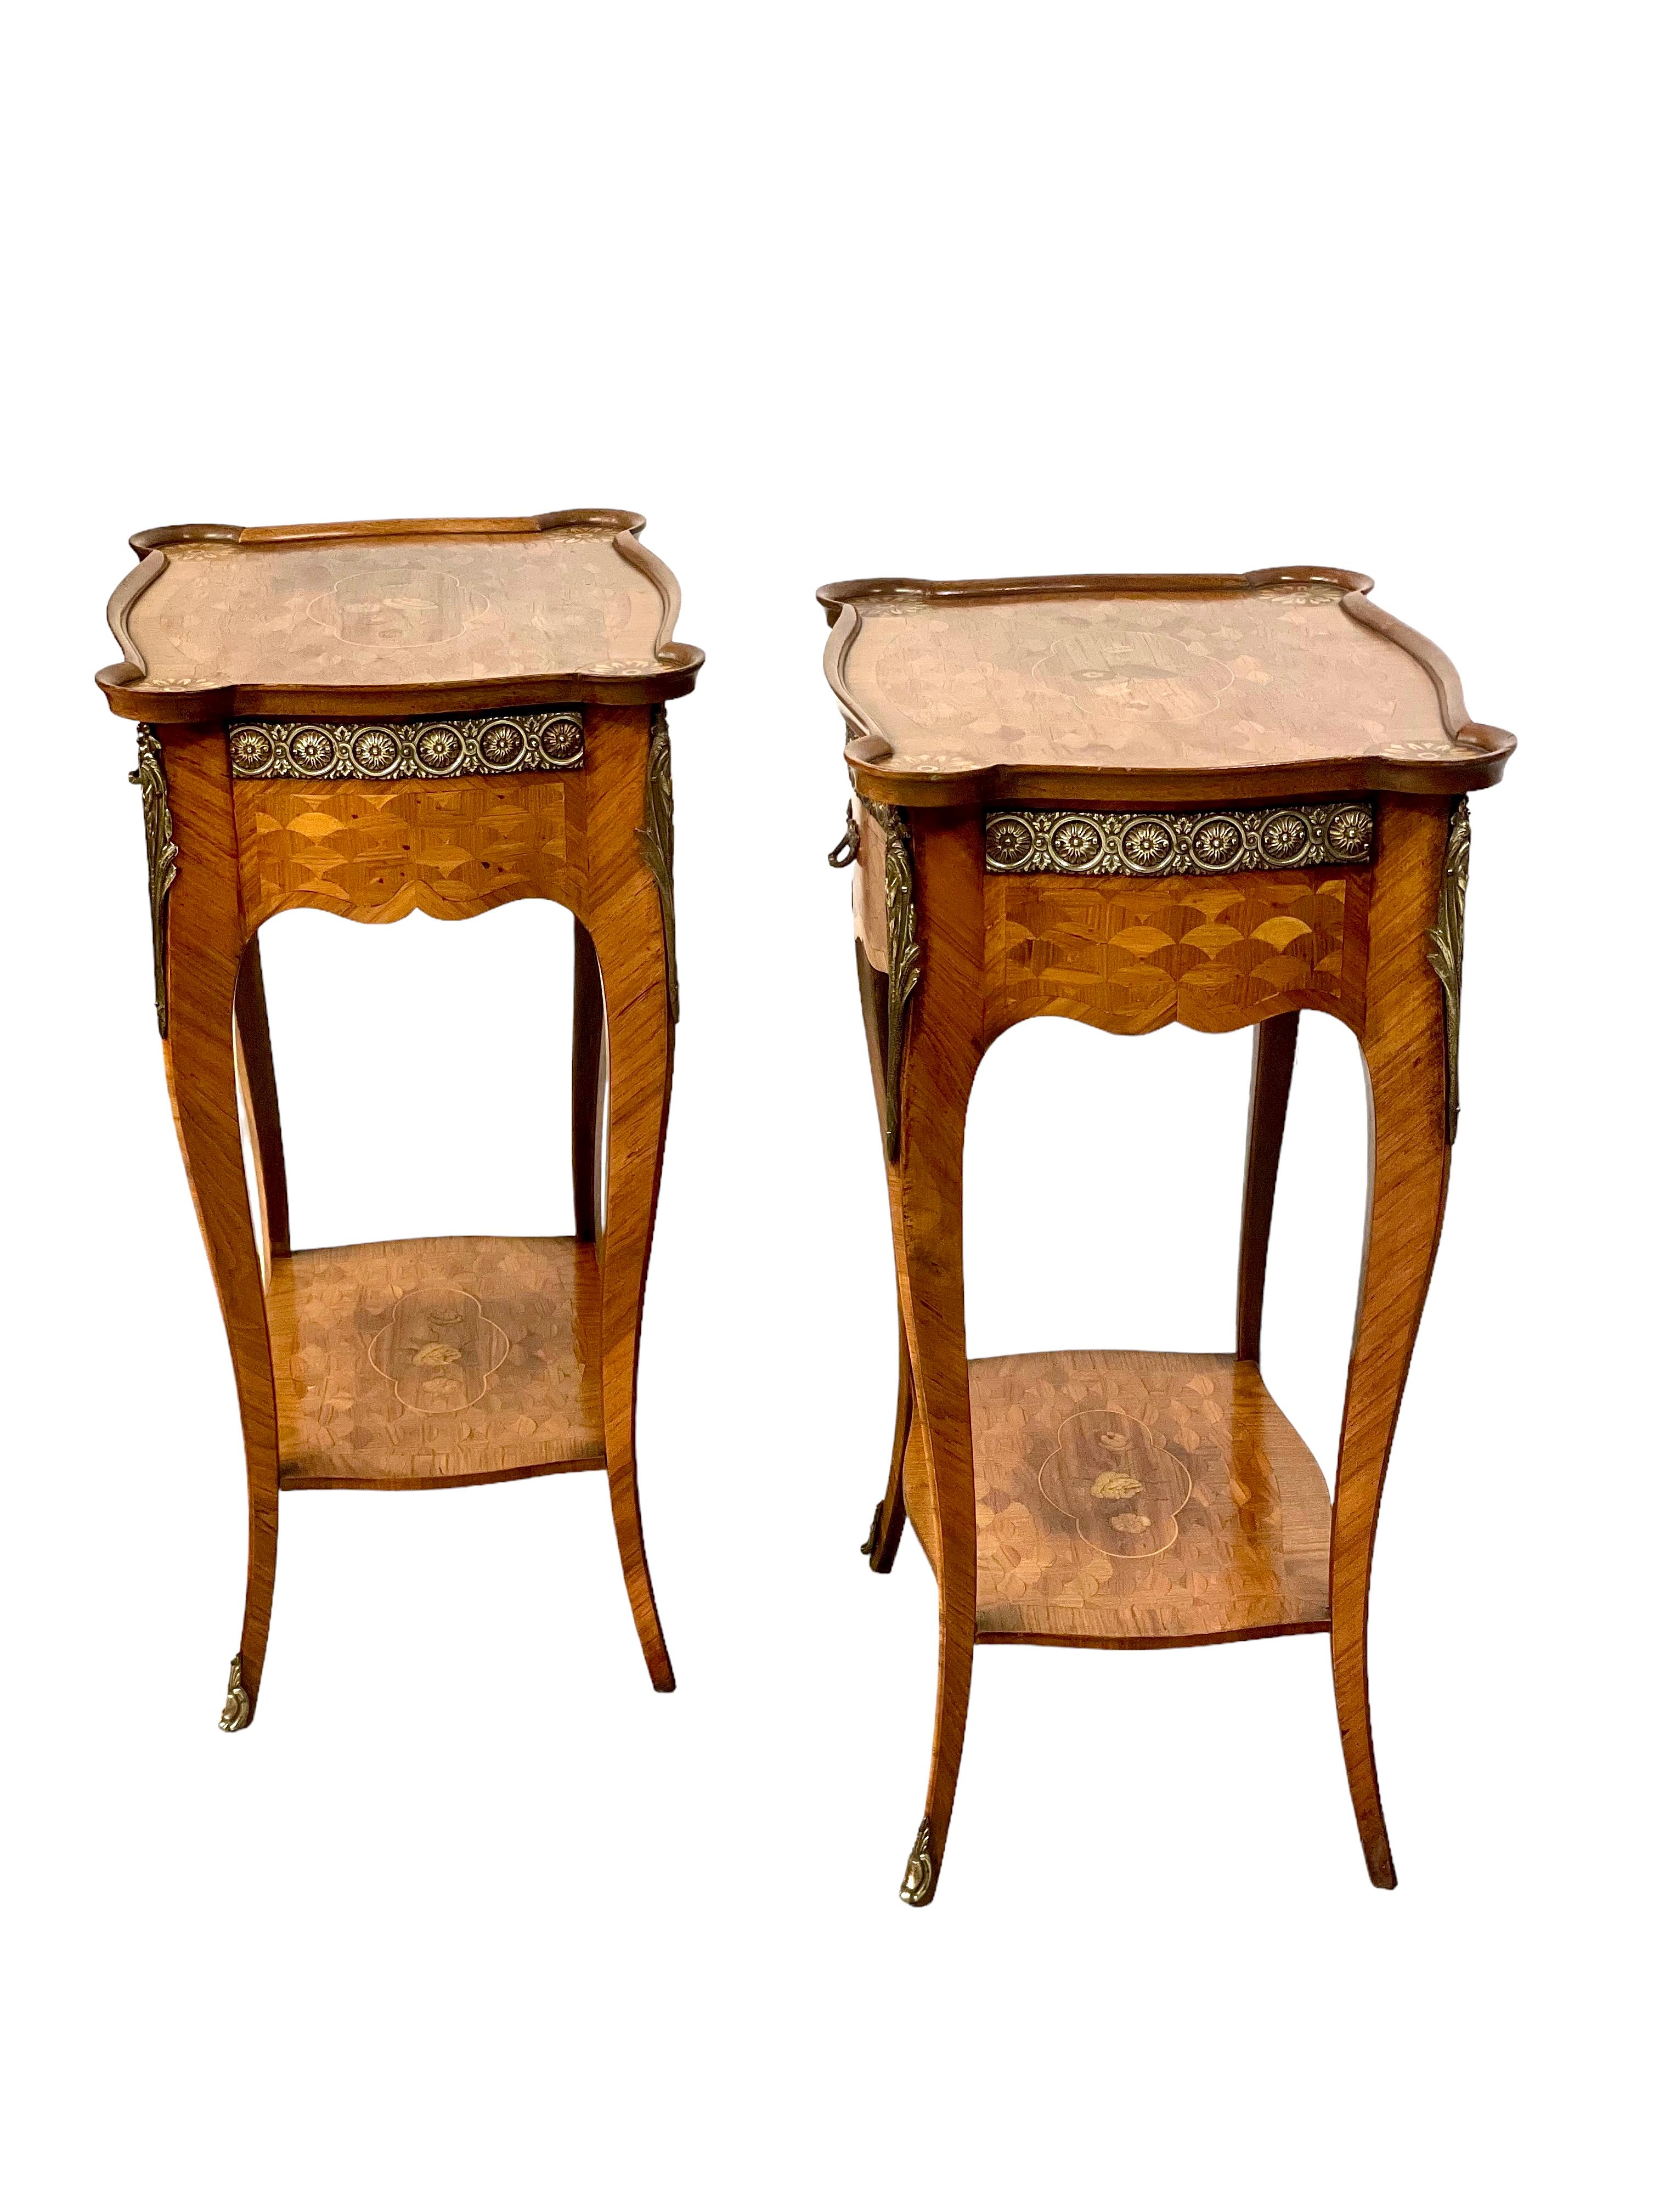 Ravissante paire de tables d'appoint de style Louis XV en bois délicatement plaqué, avec des incrustations de marqueterie décorative sur tous les côtés. Ces tables ont une belle forme de bombe, reposant sur des pieds cabriole élégamment incurvés,